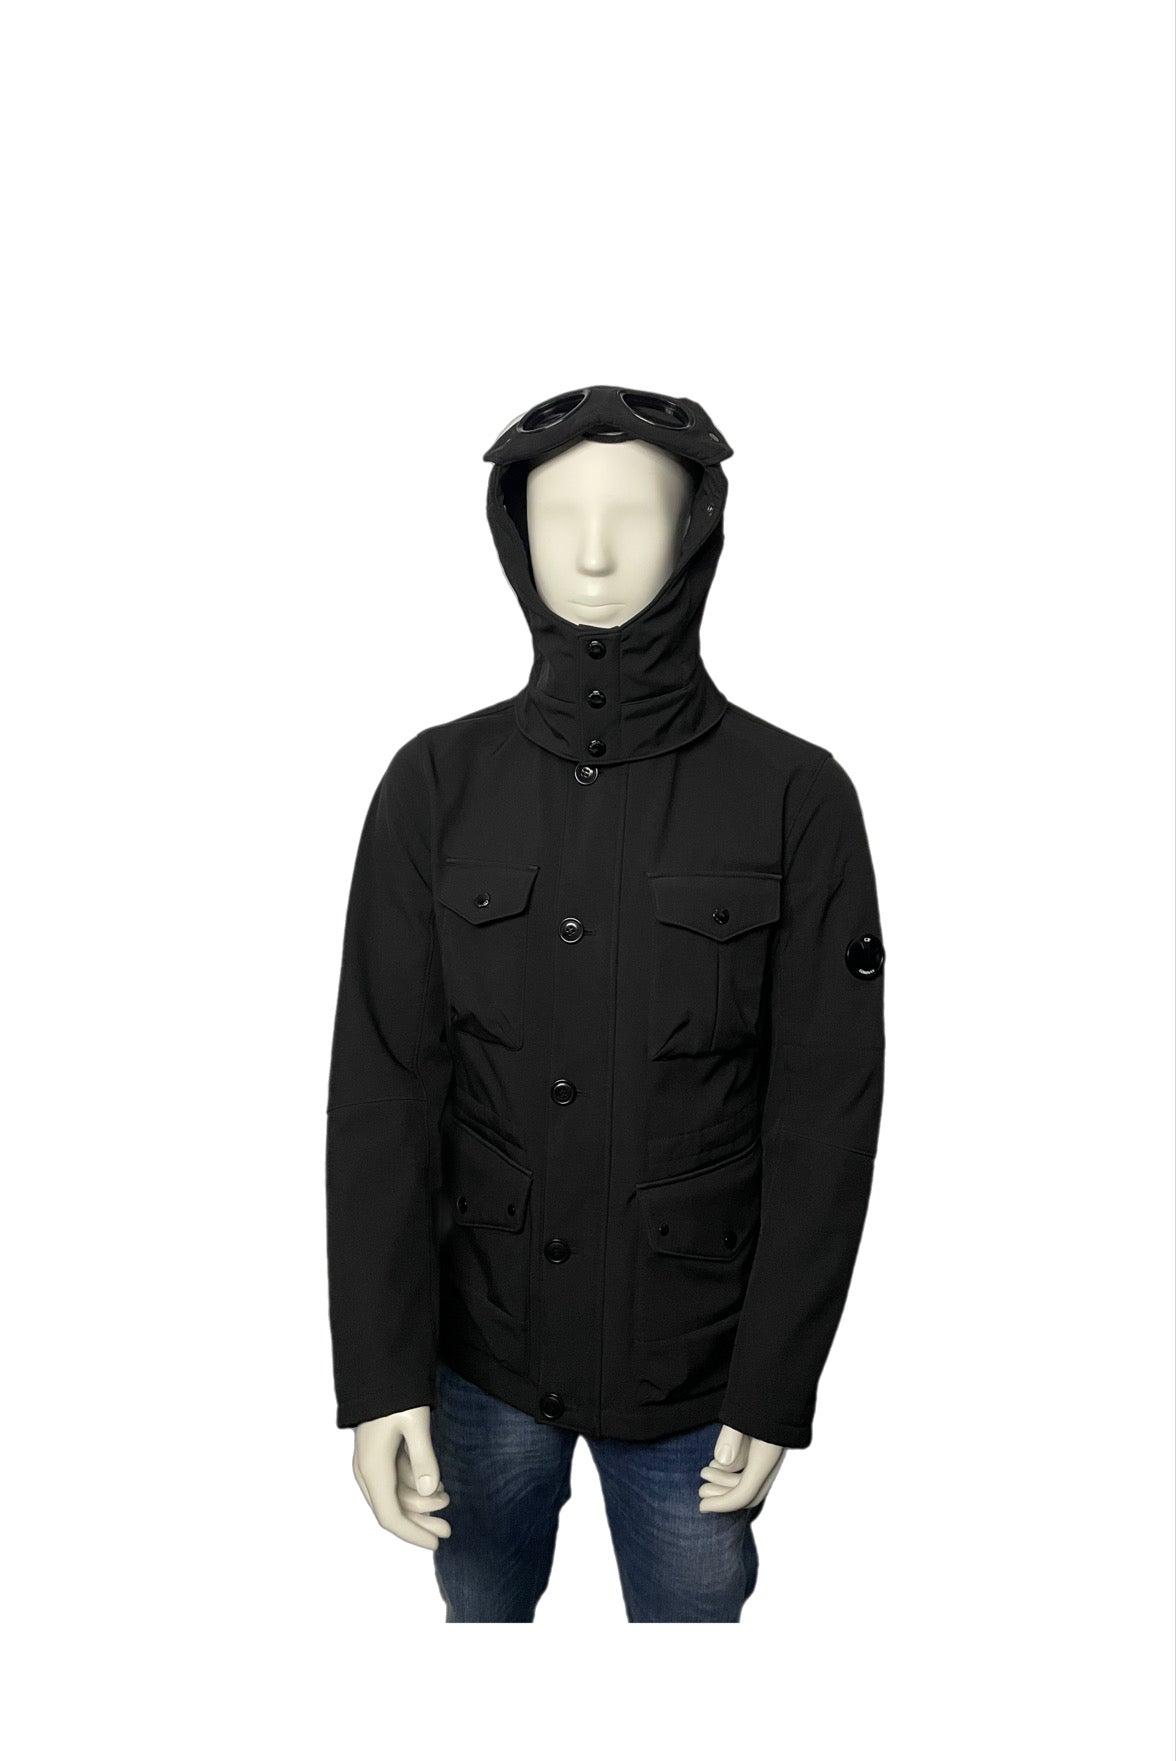 Jacket – CA Clothing20